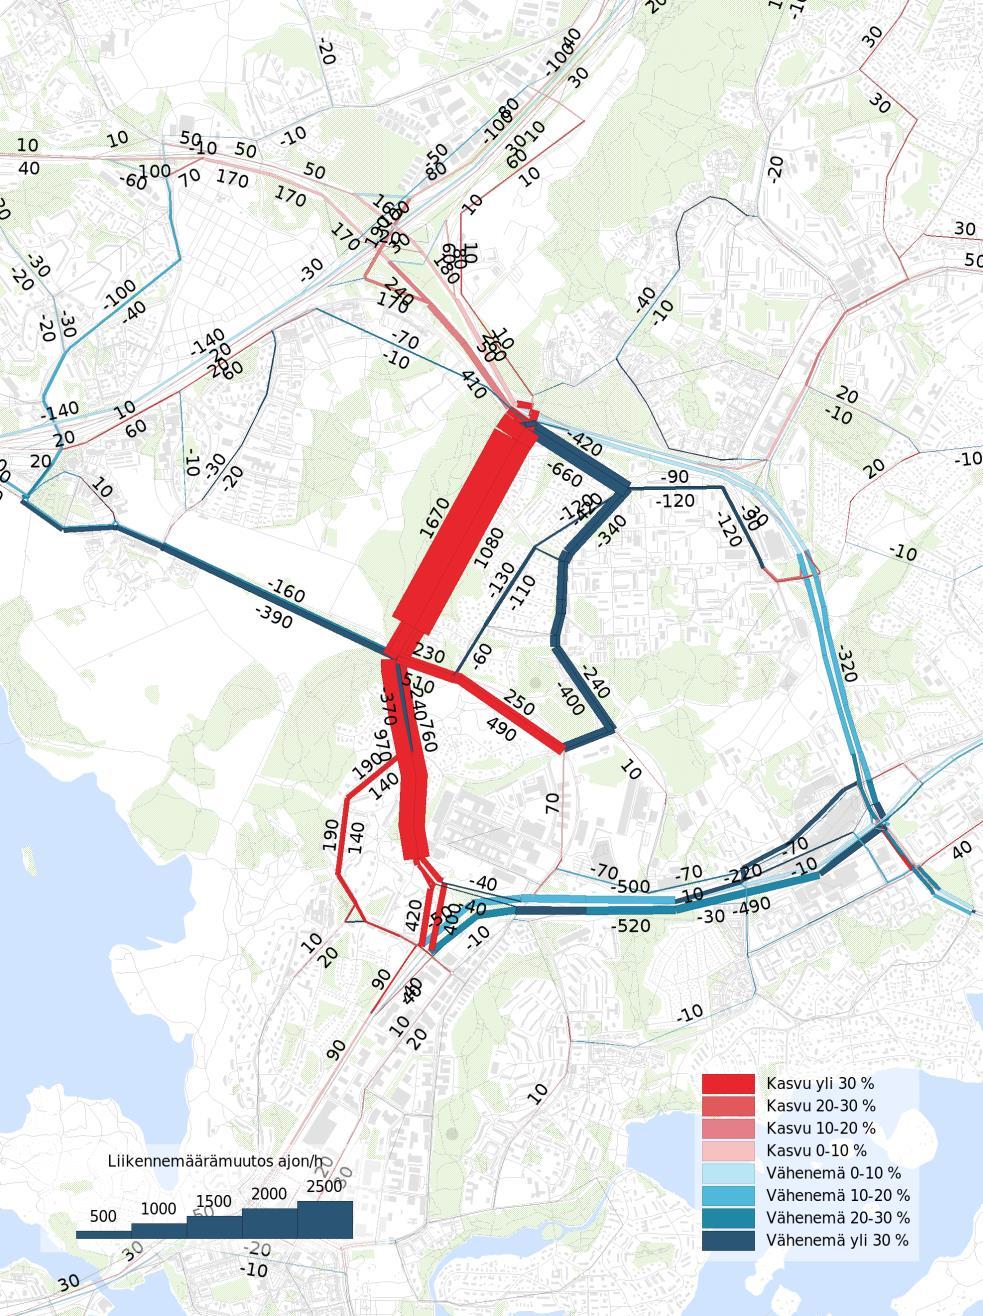 Viikin yhdyskadun Itäväylä-Kehä I vaikutukset tie- ja katuverkon liikennemääriin, aamuhuipputunti v. 2050.